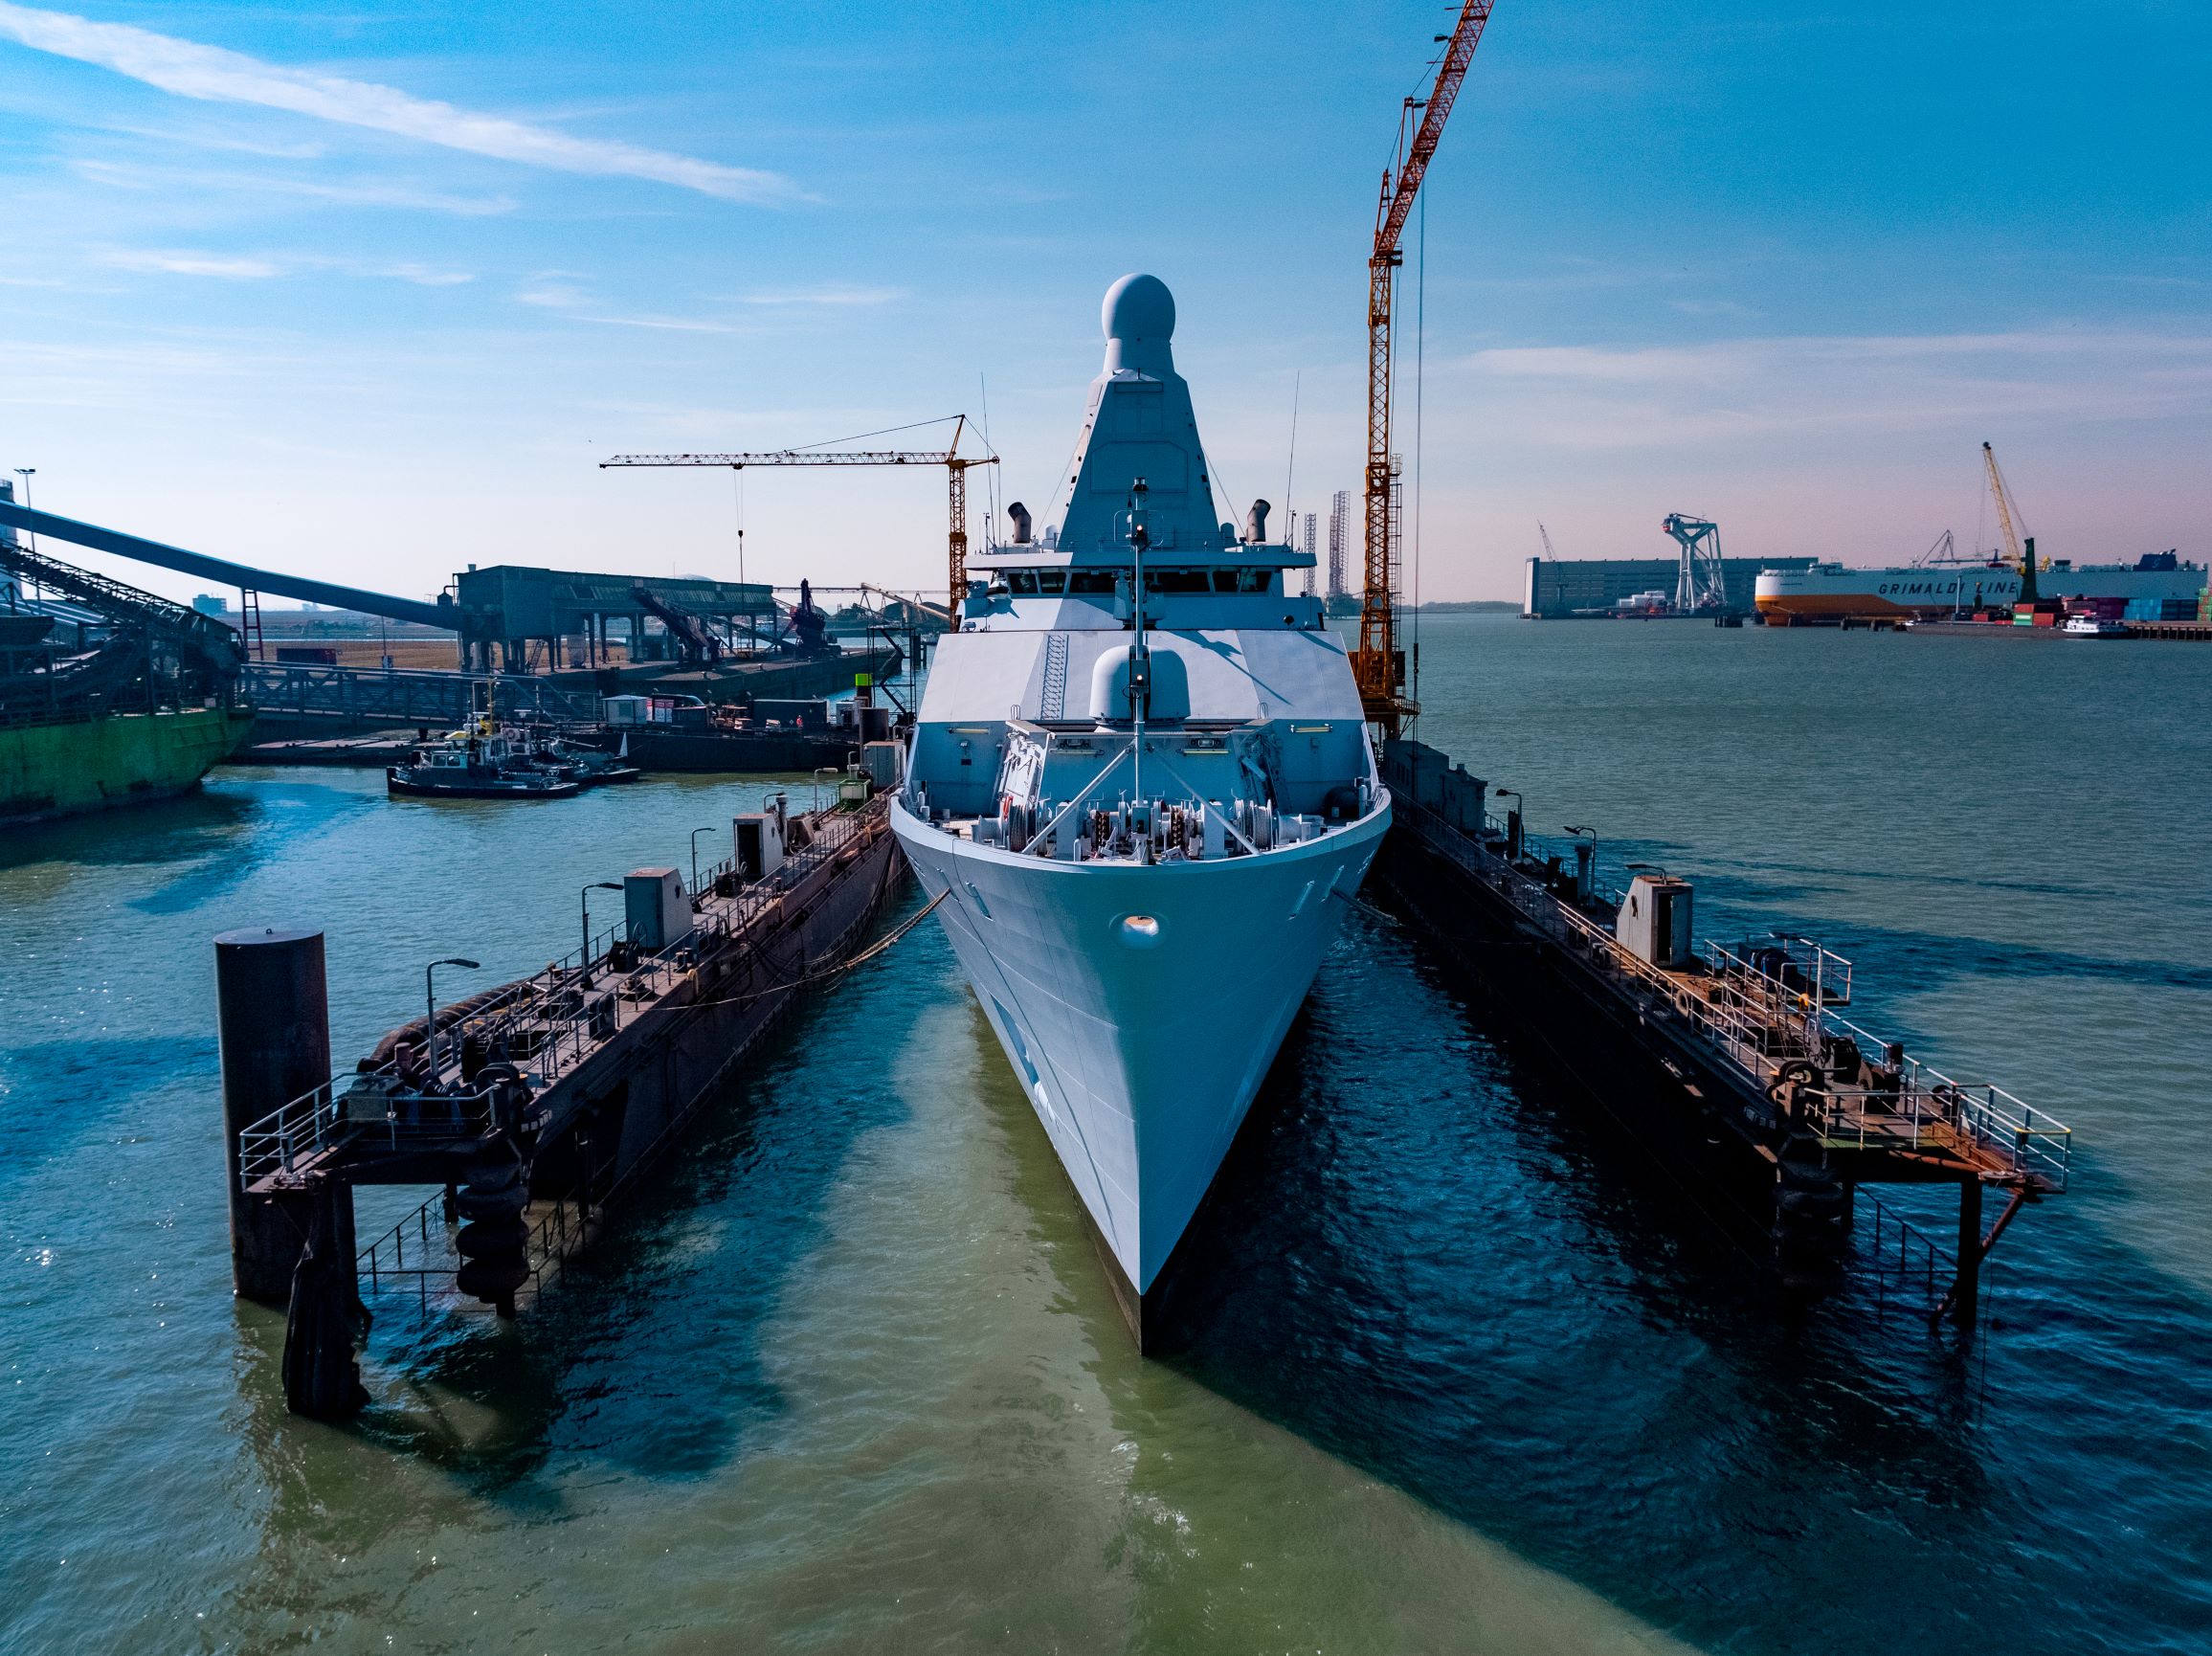 HNLMS Groningen in dock 